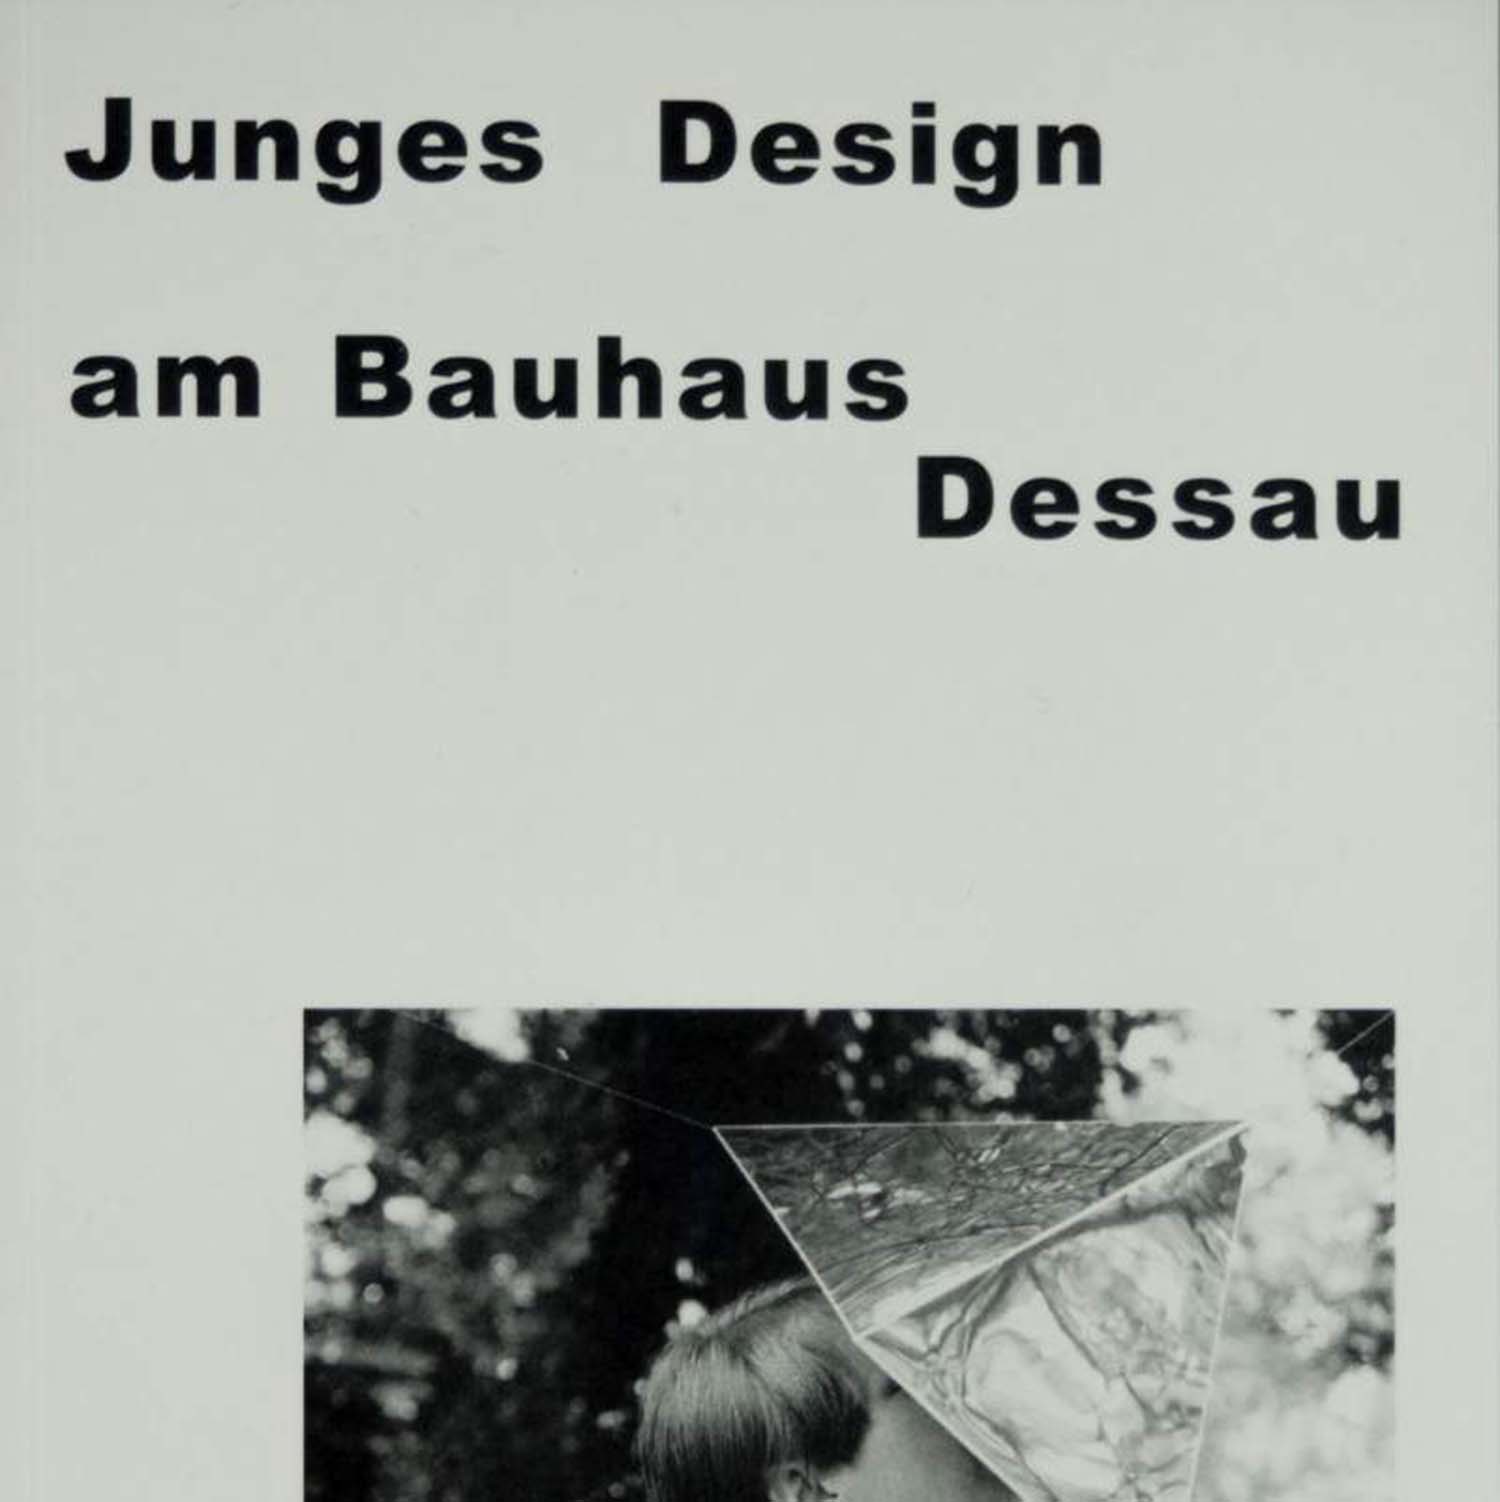 תמונה של עיצוב צעיר בבתי המאסטרים של דסאו